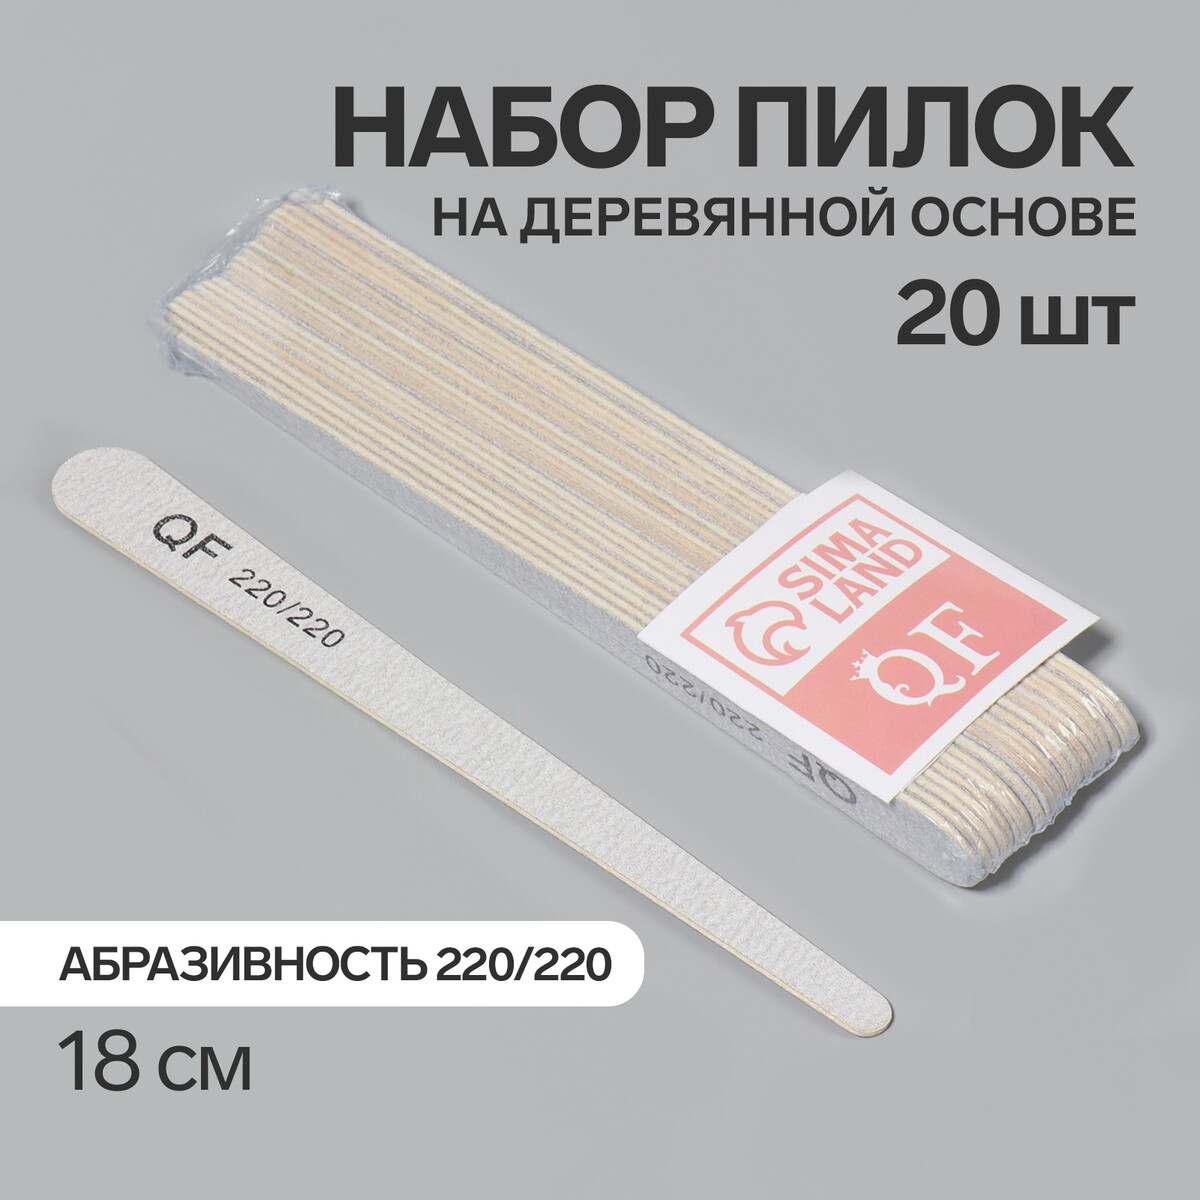 Пилка-наждак, набор 20 шт, деревянная основа, абразивность 220/220, 18 см, цвет серый палка основа для макраме деревянная без покрытия d 1 × 50 см